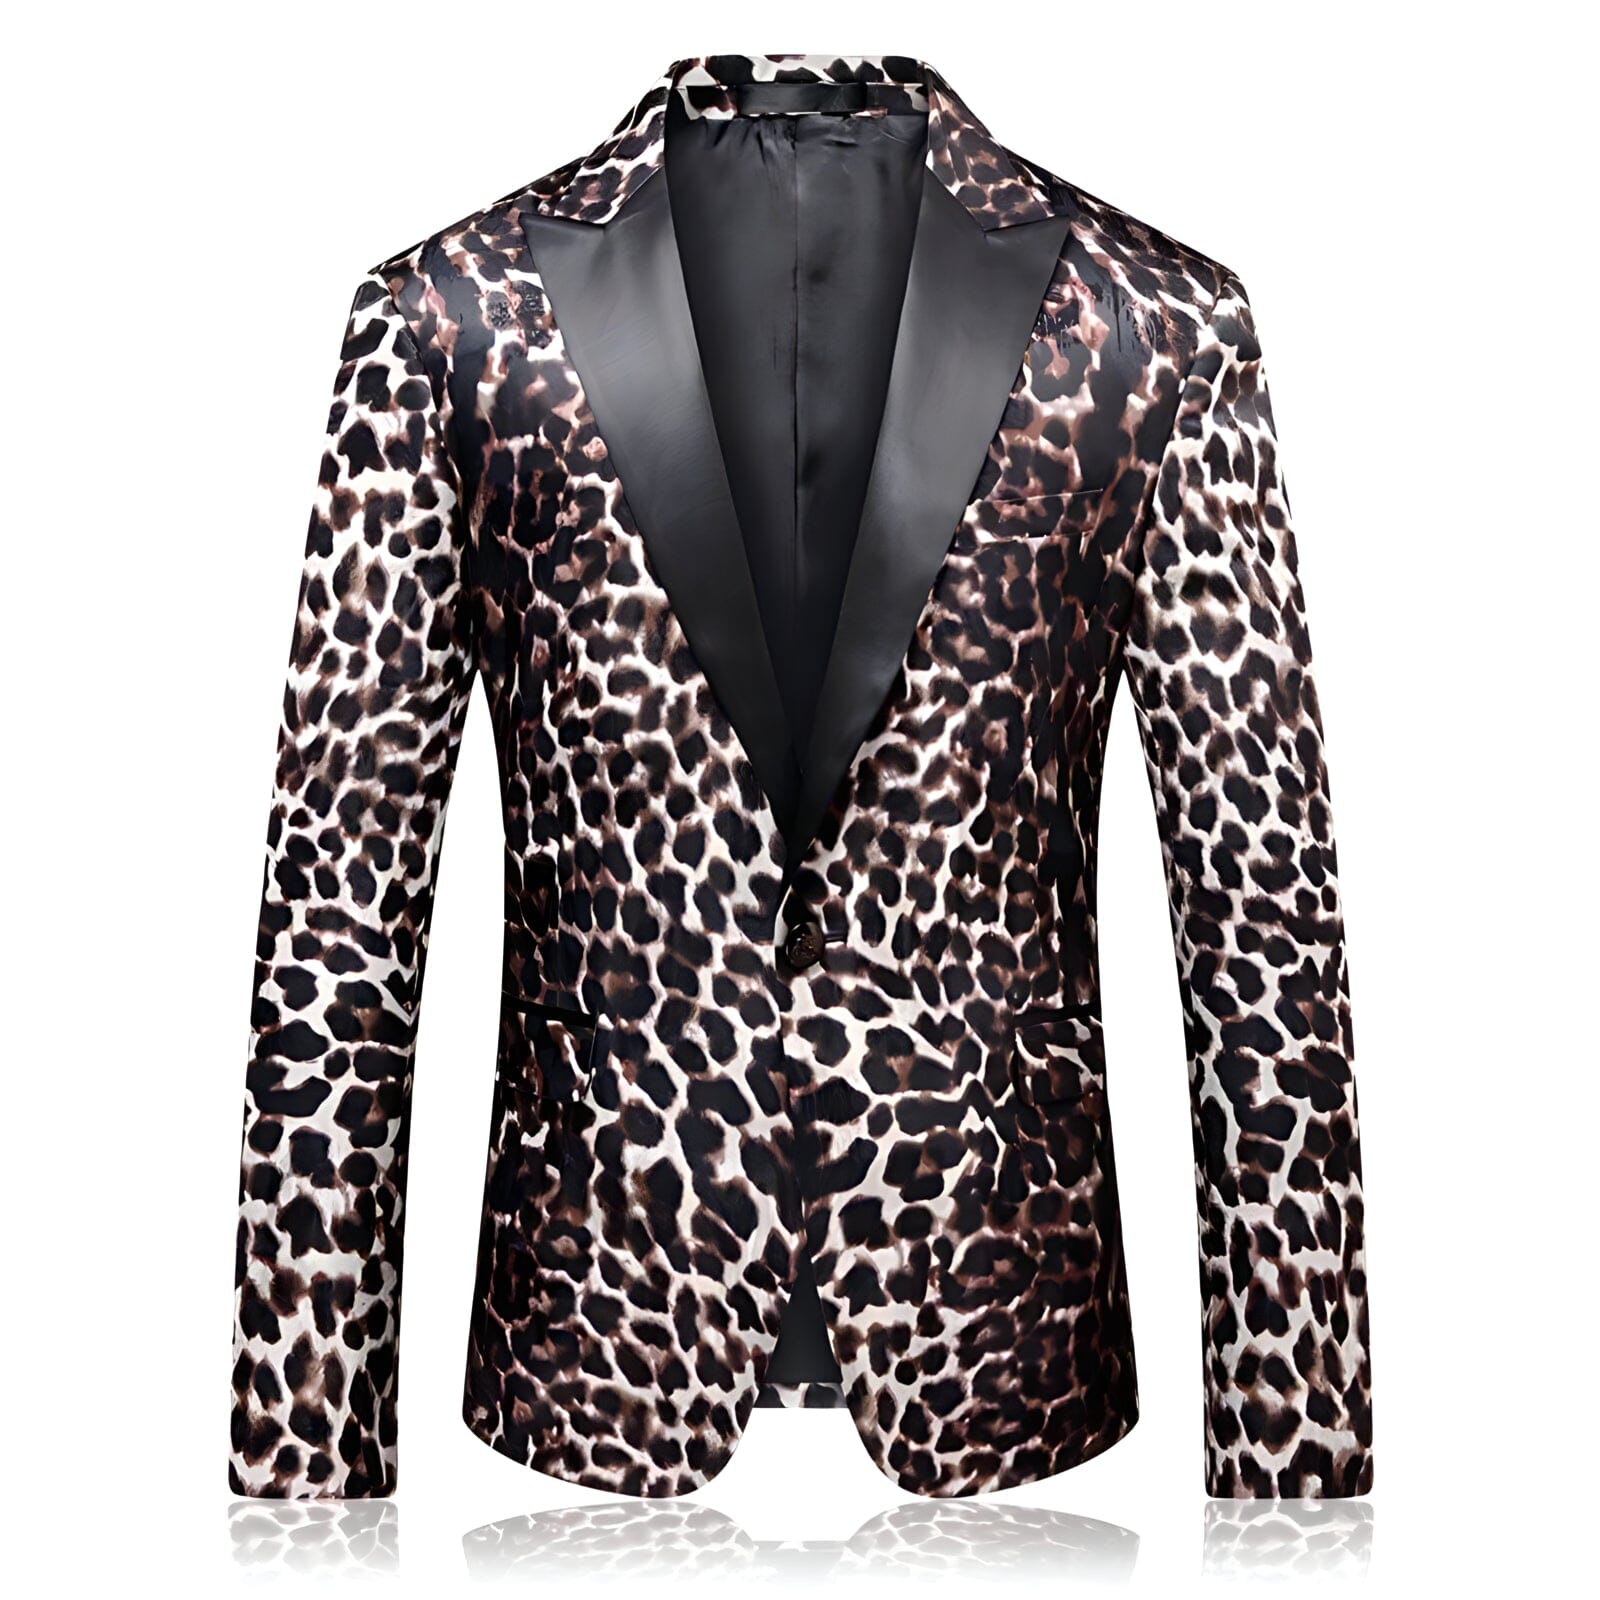 The Leopard Slim Fit Blazer Suit Jacket Shop5798684 Store XS 